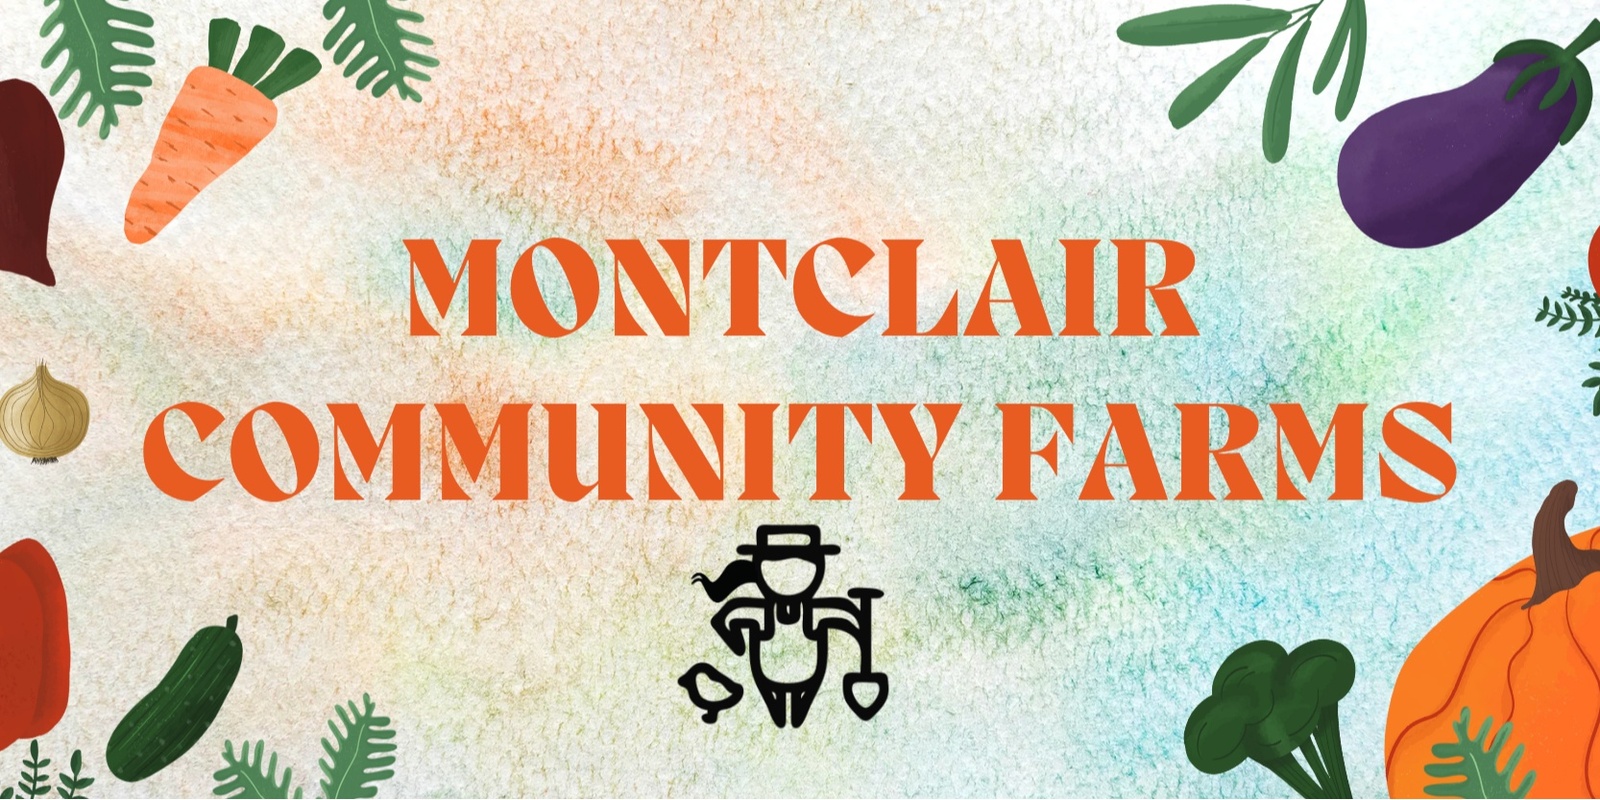 Montclair Community Farms's banner